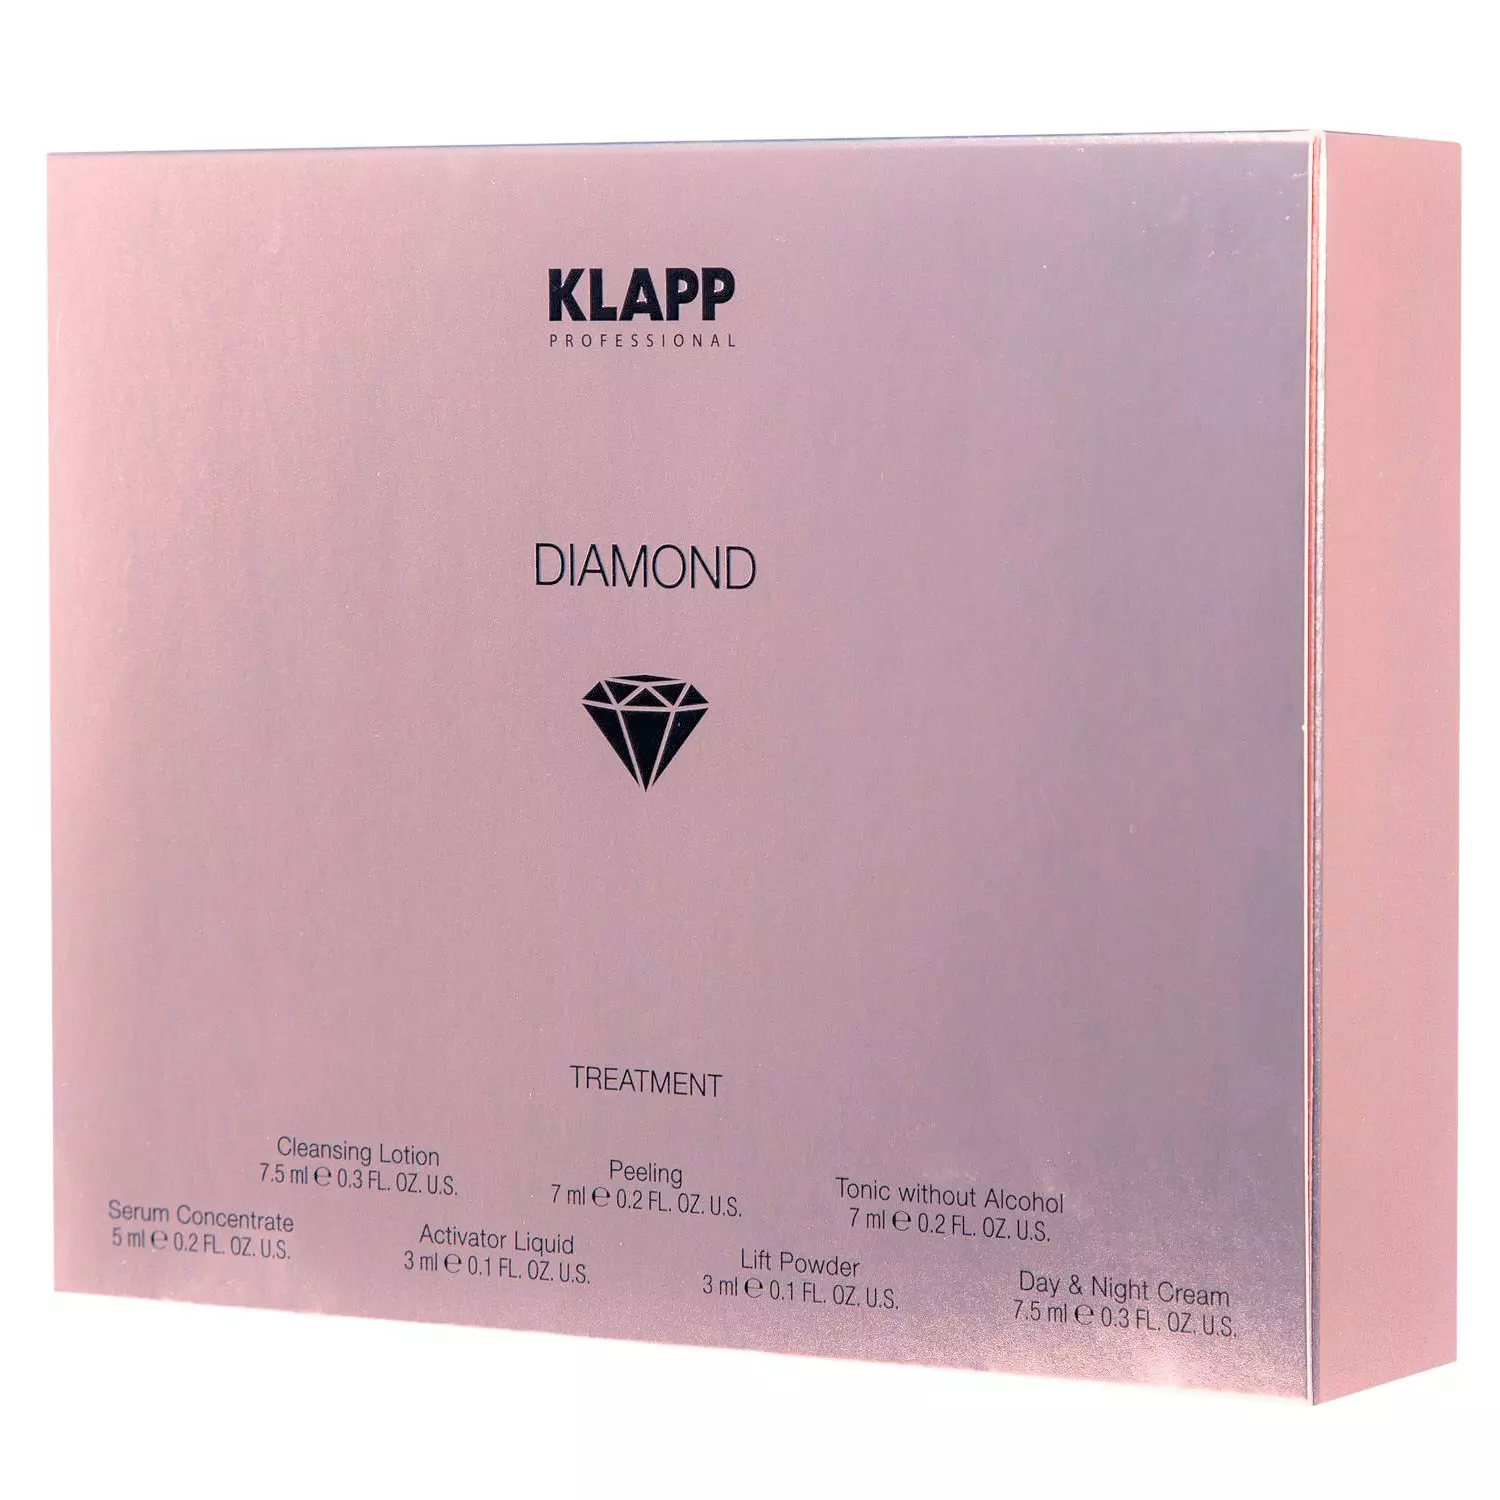 Купить Подарочный набор мини-продуктов Diamond Treatment, 7 средств, Klapp (Германия)